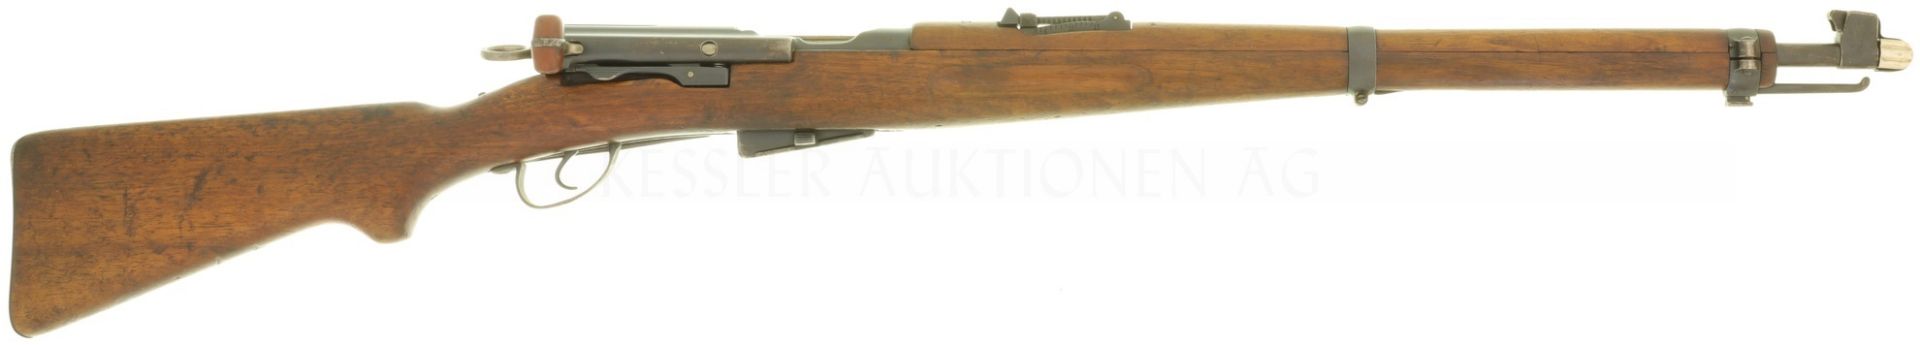 Repetierbüchse, W+F Bern, K00/11, frühe Variante des K11 aus dem Kurzgewehr 00, Kal. 7.55x55